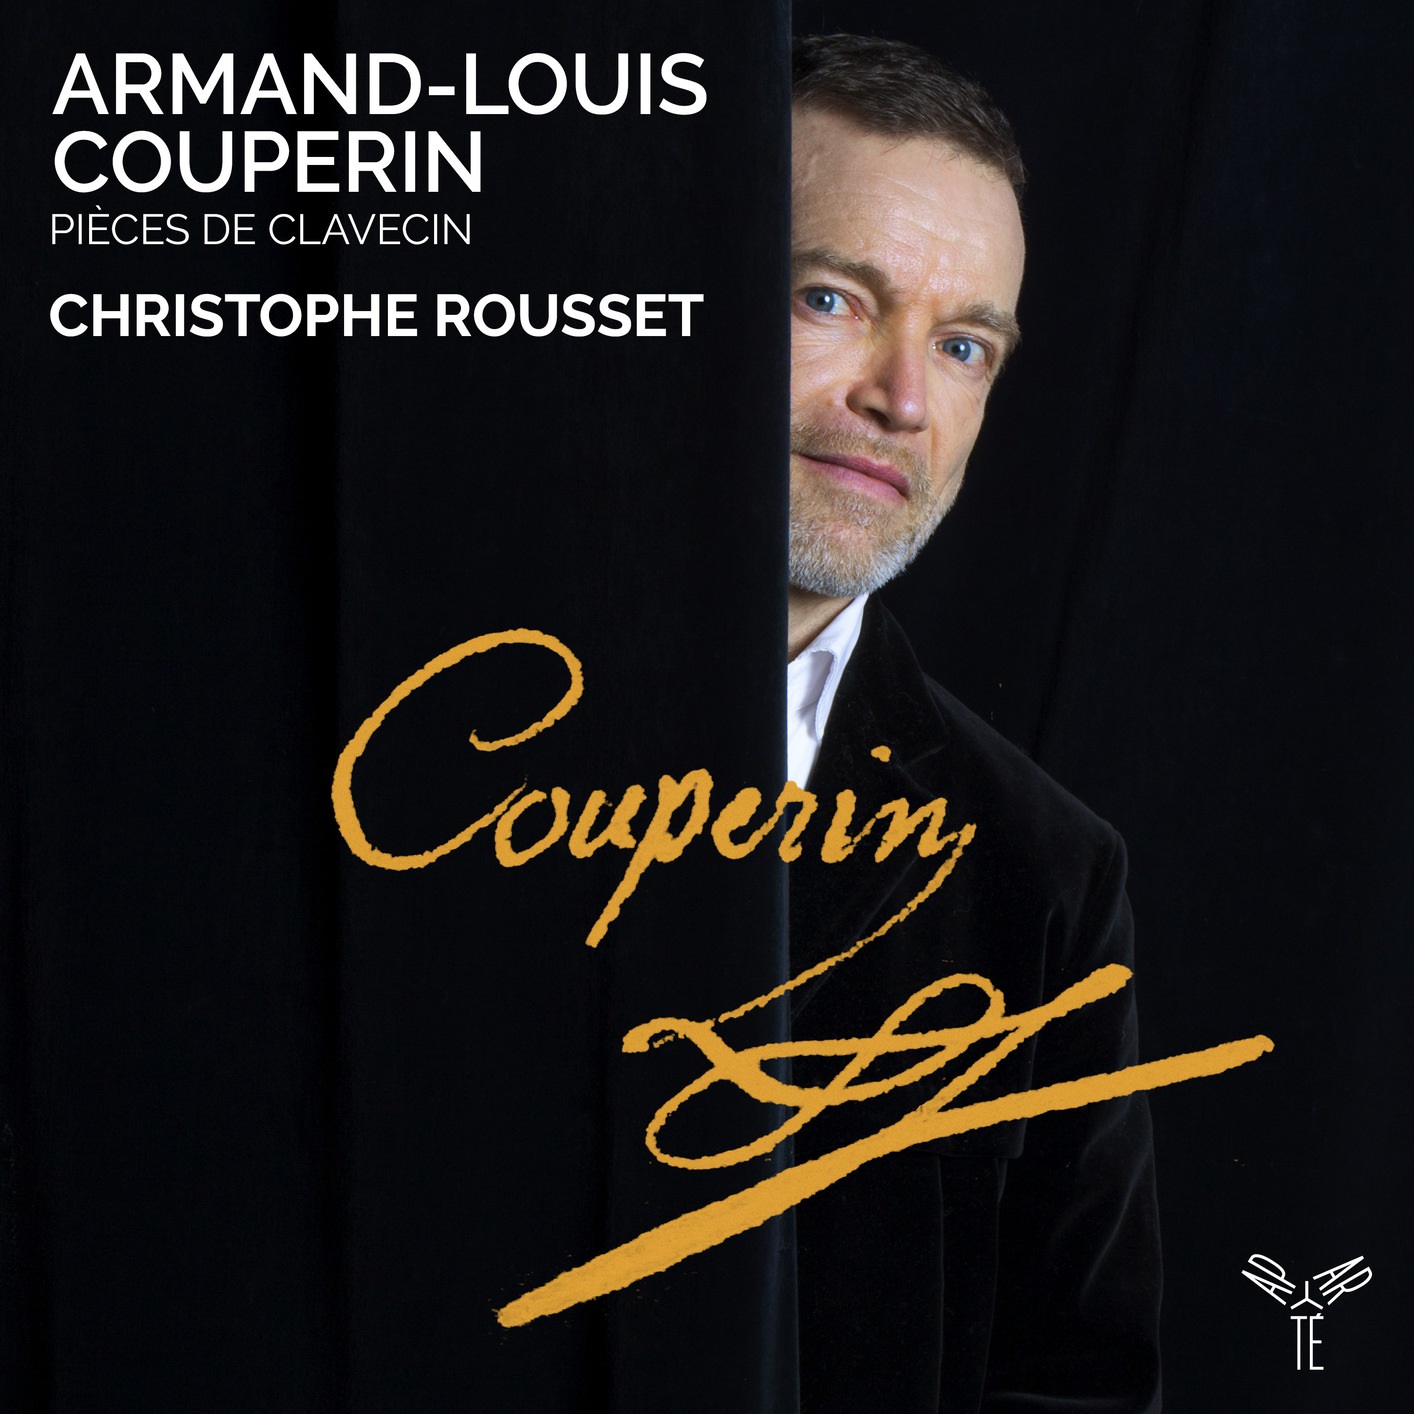 Christophe Rousset - Armand-Louis Couperin: Pieces de Clavecin (2020) [FLAC 24bit/96kHz]